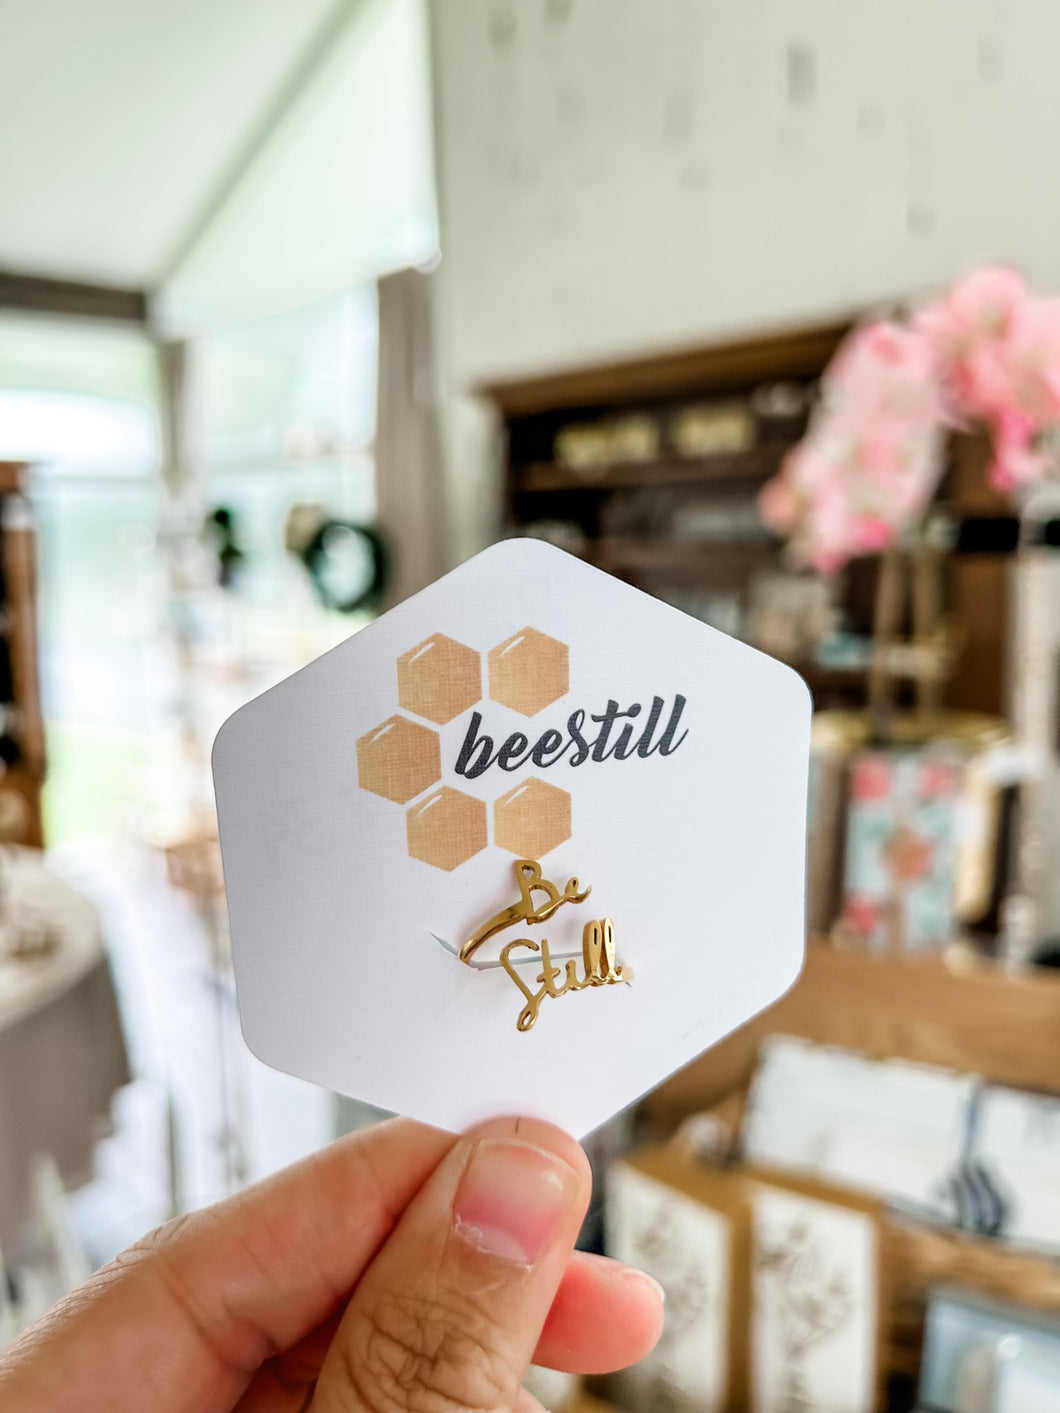 Be Still ring- Bee Still Design